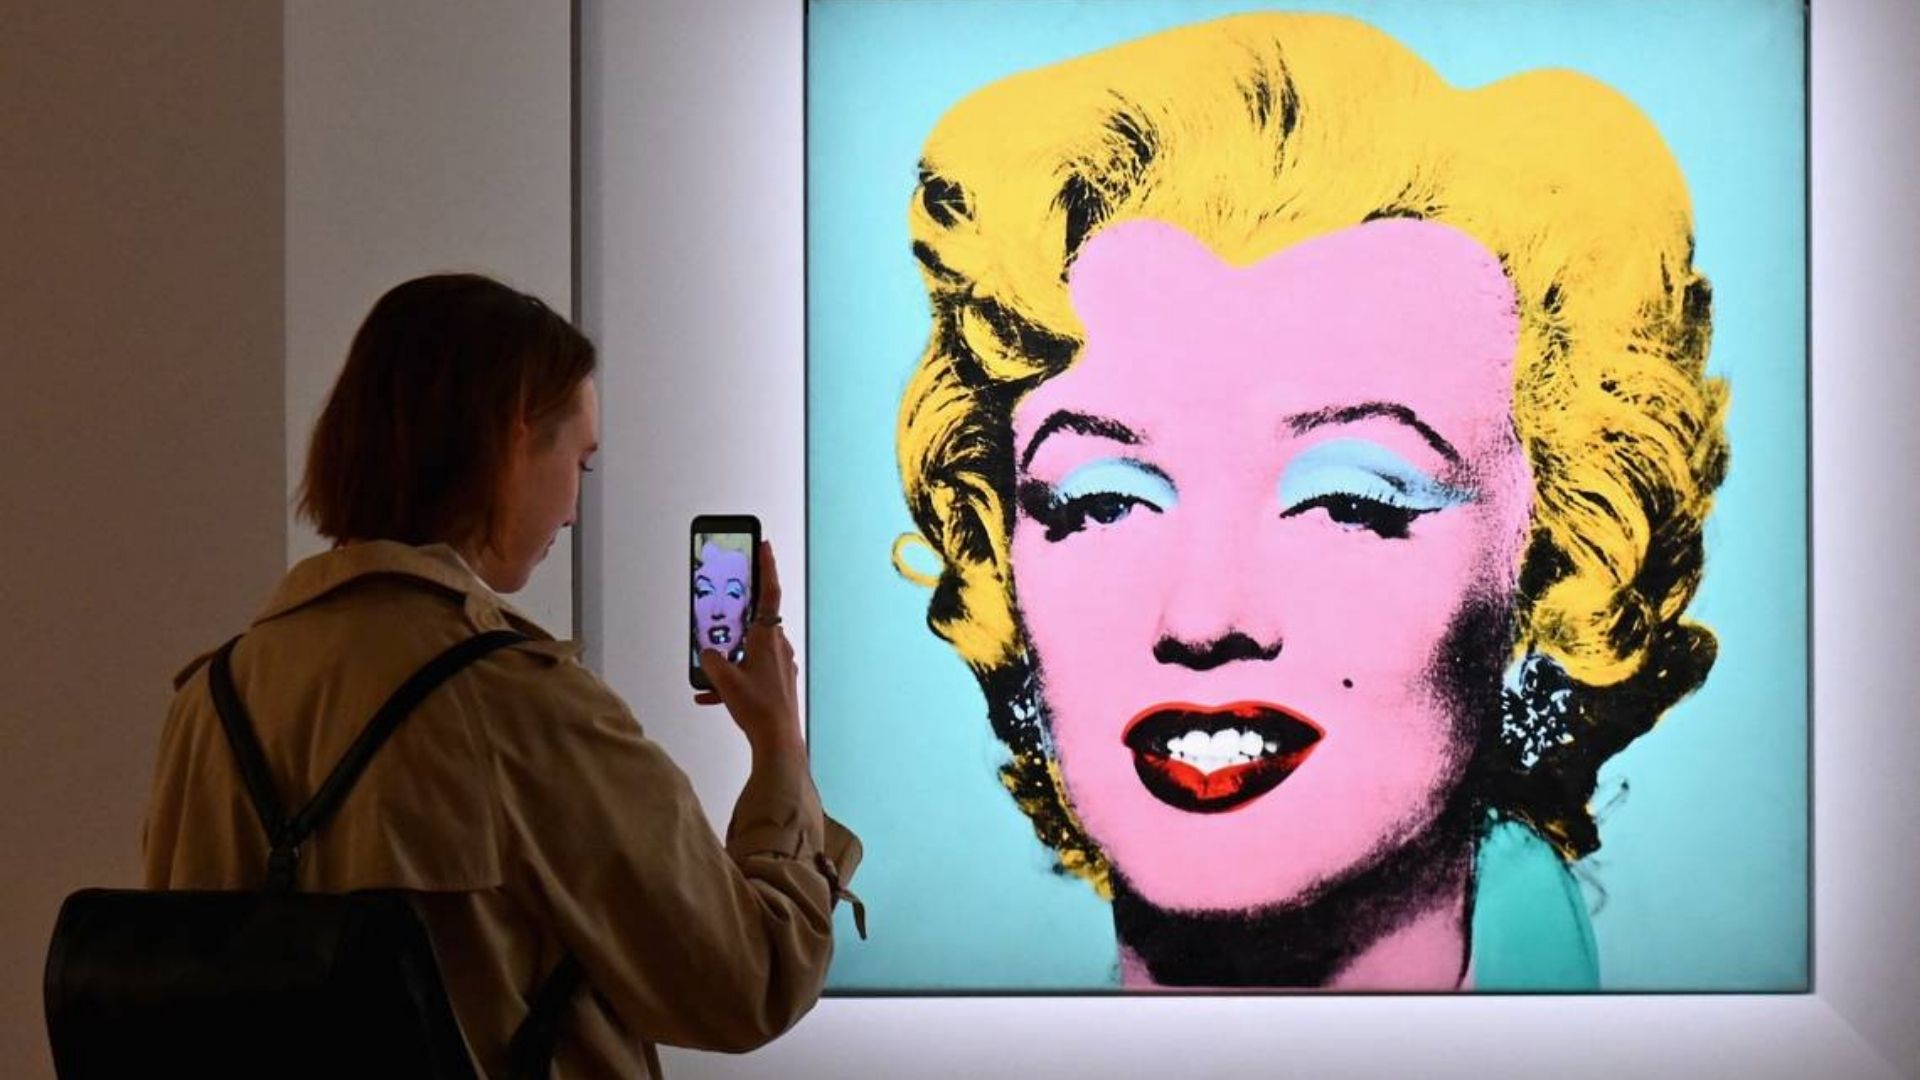 Retrato de Marilyn Monroe pintado por Warhol rompe récord